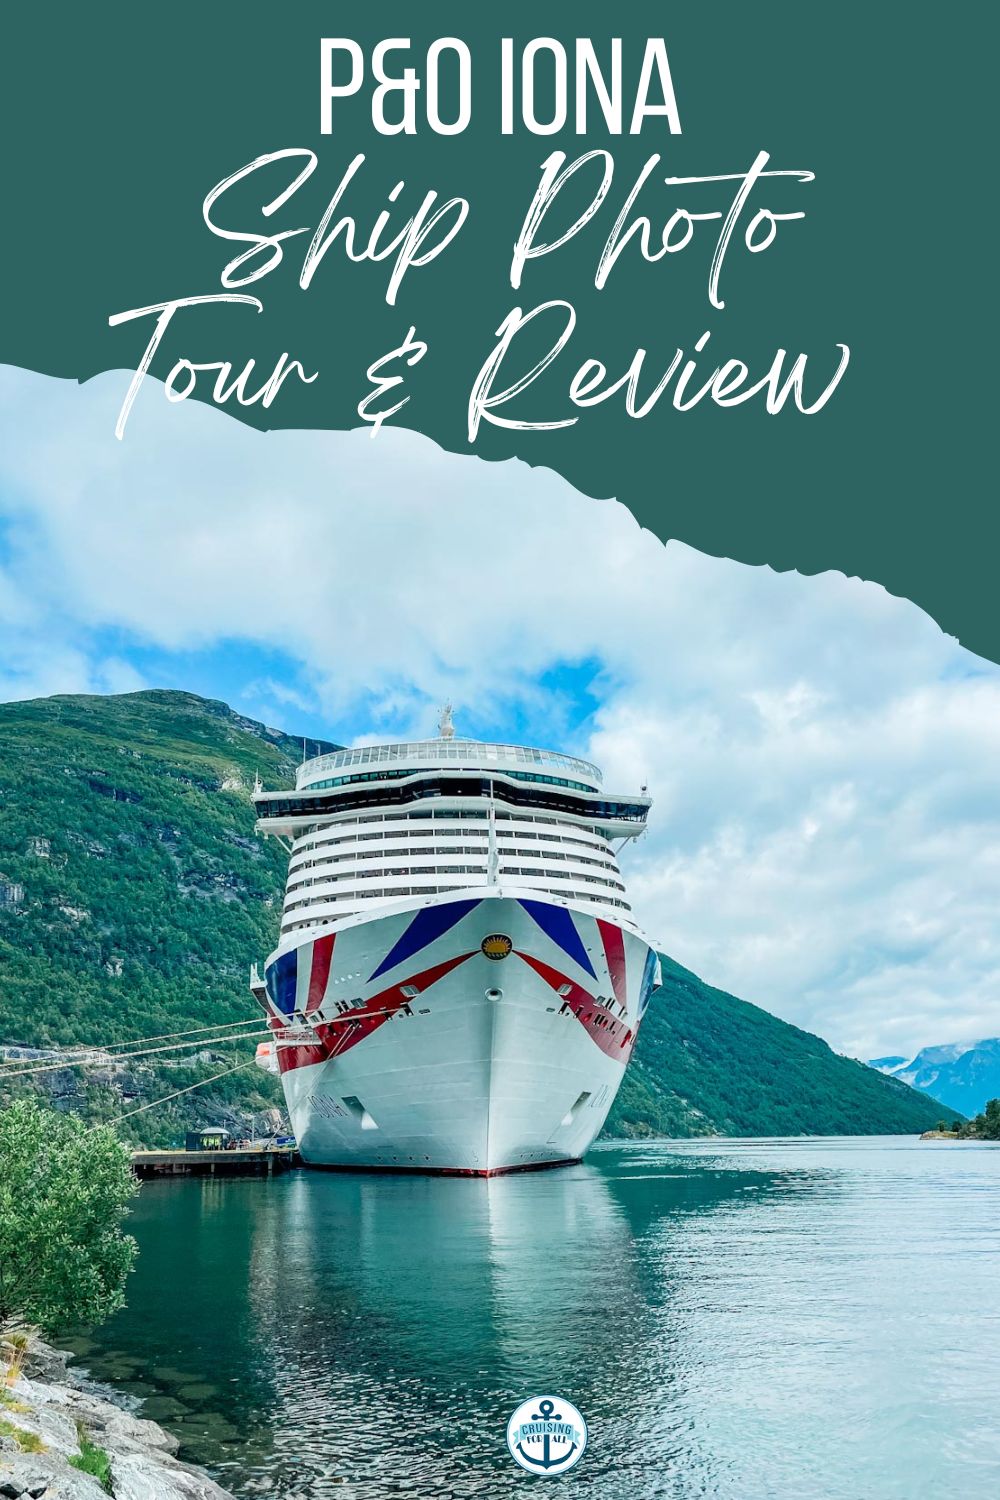 P&O Iona Ship Tour and Review